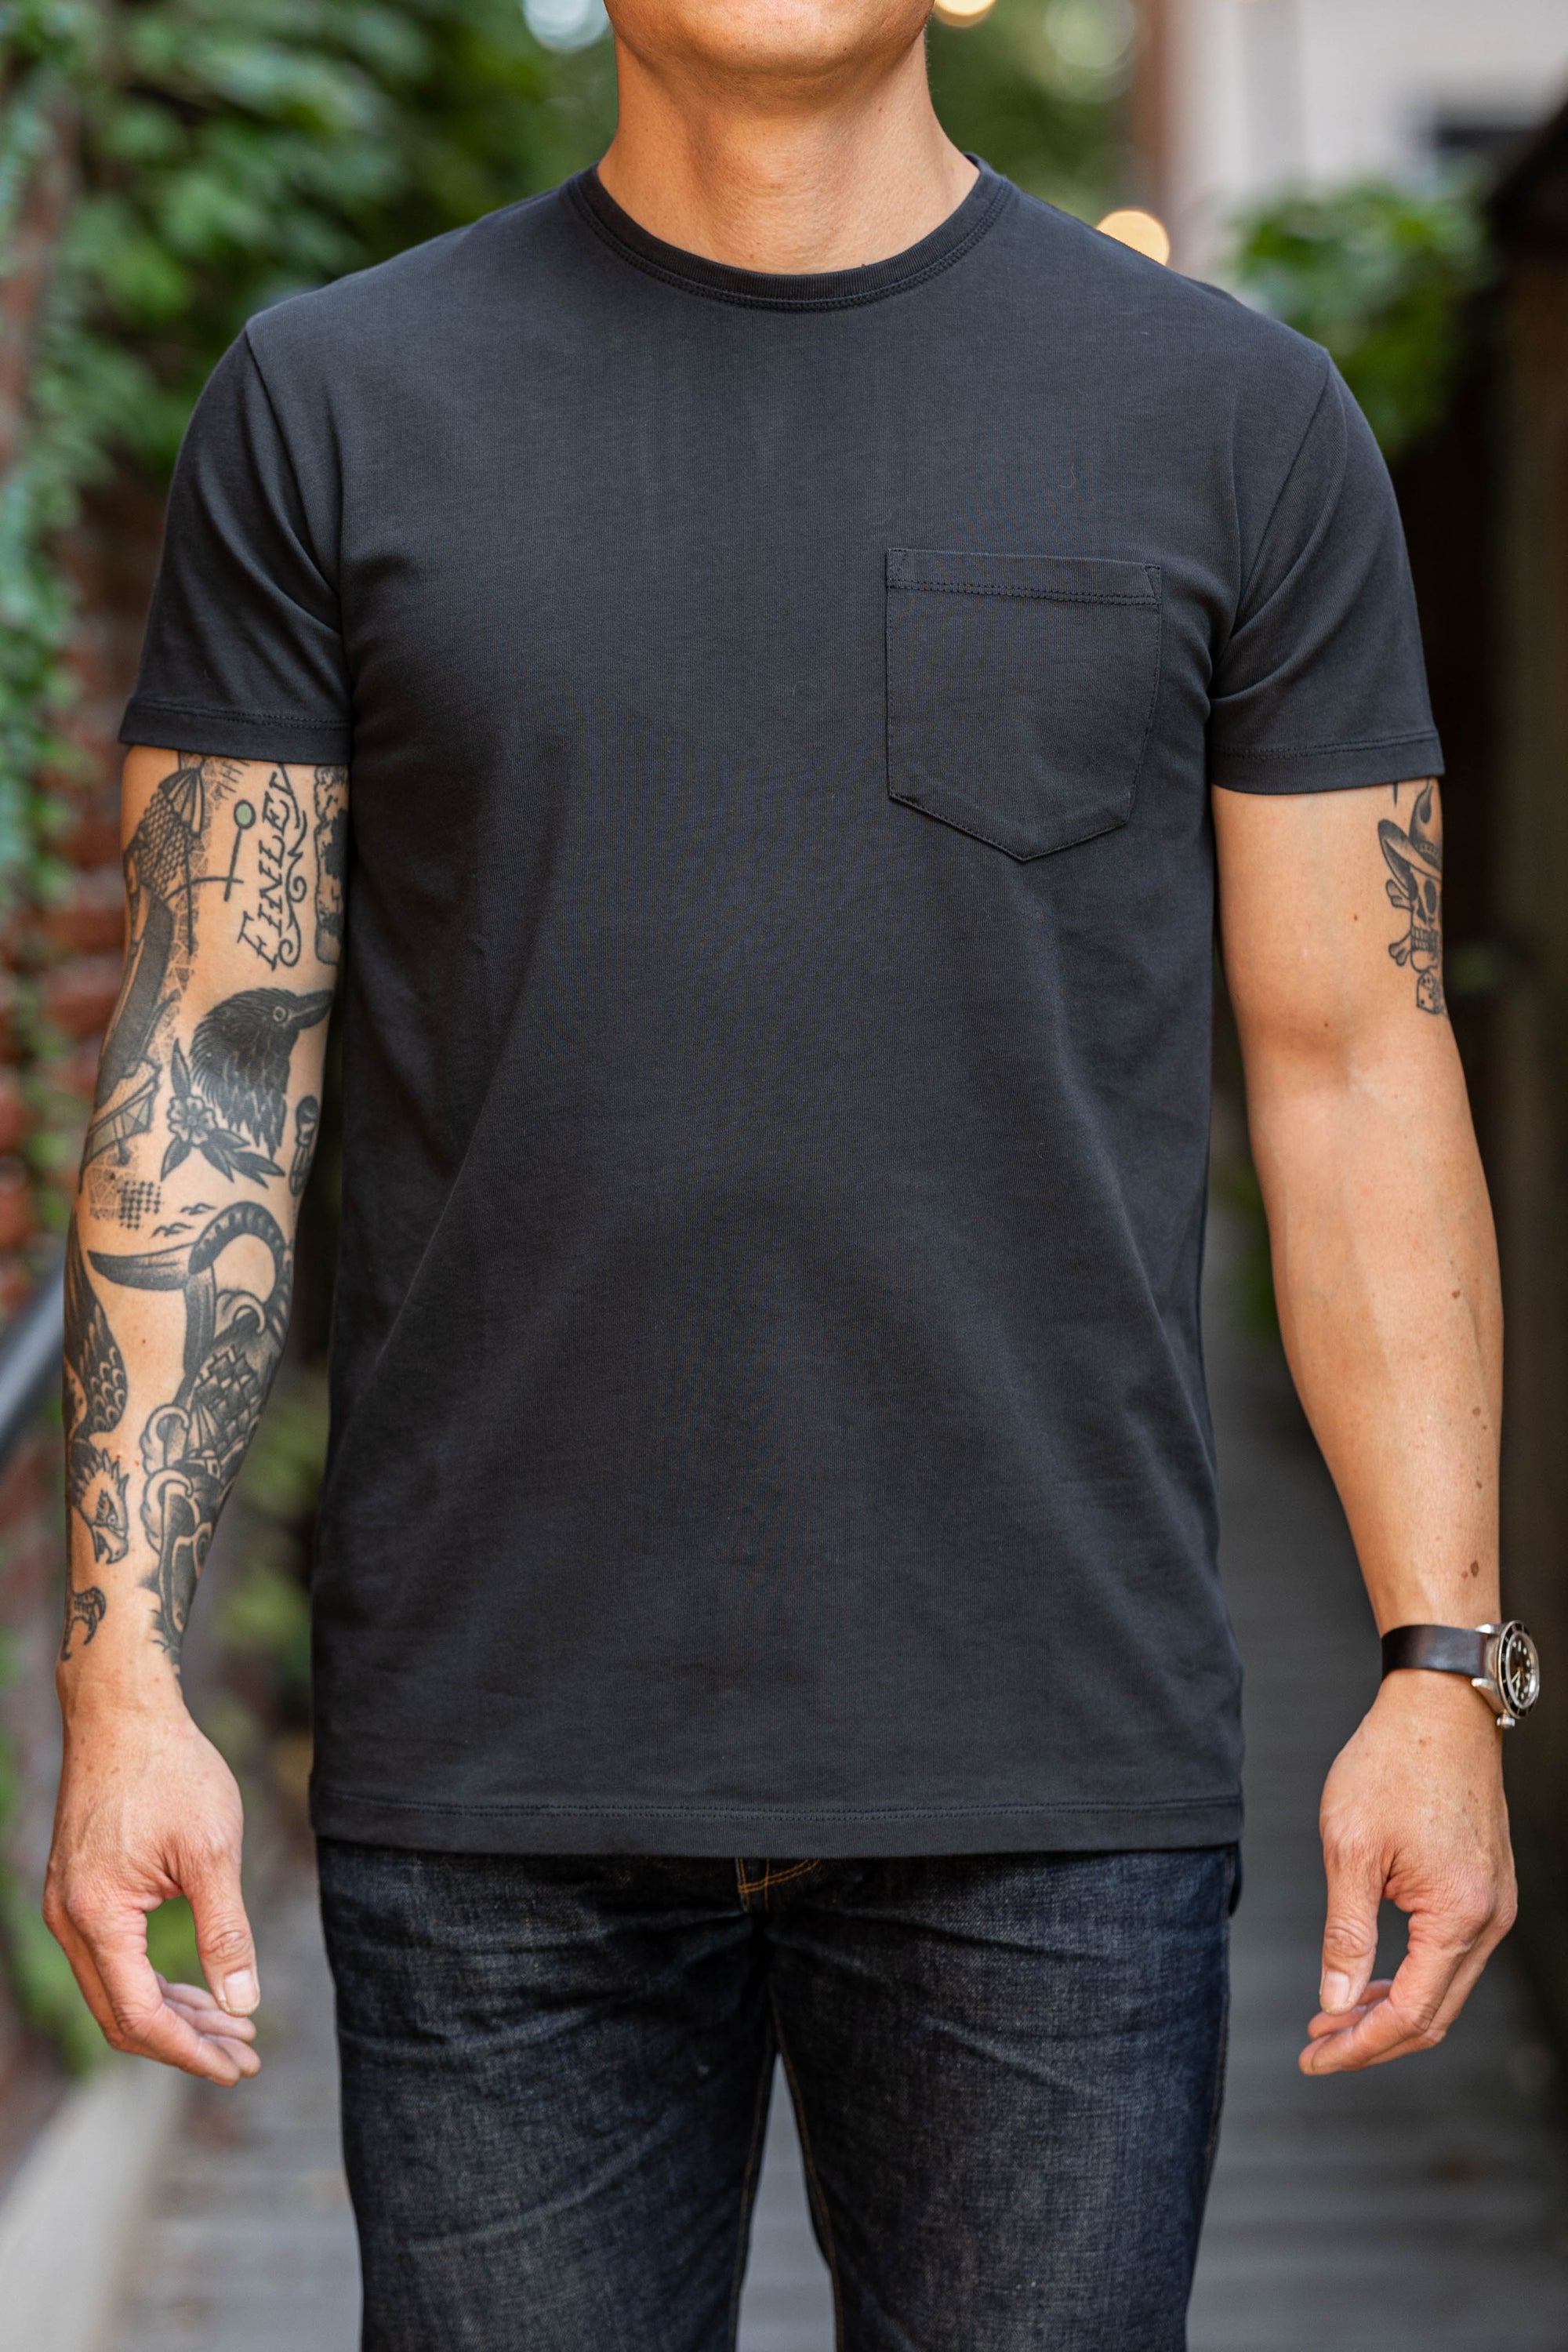 Indigofera Wilson T-Shirt - Marshall Black